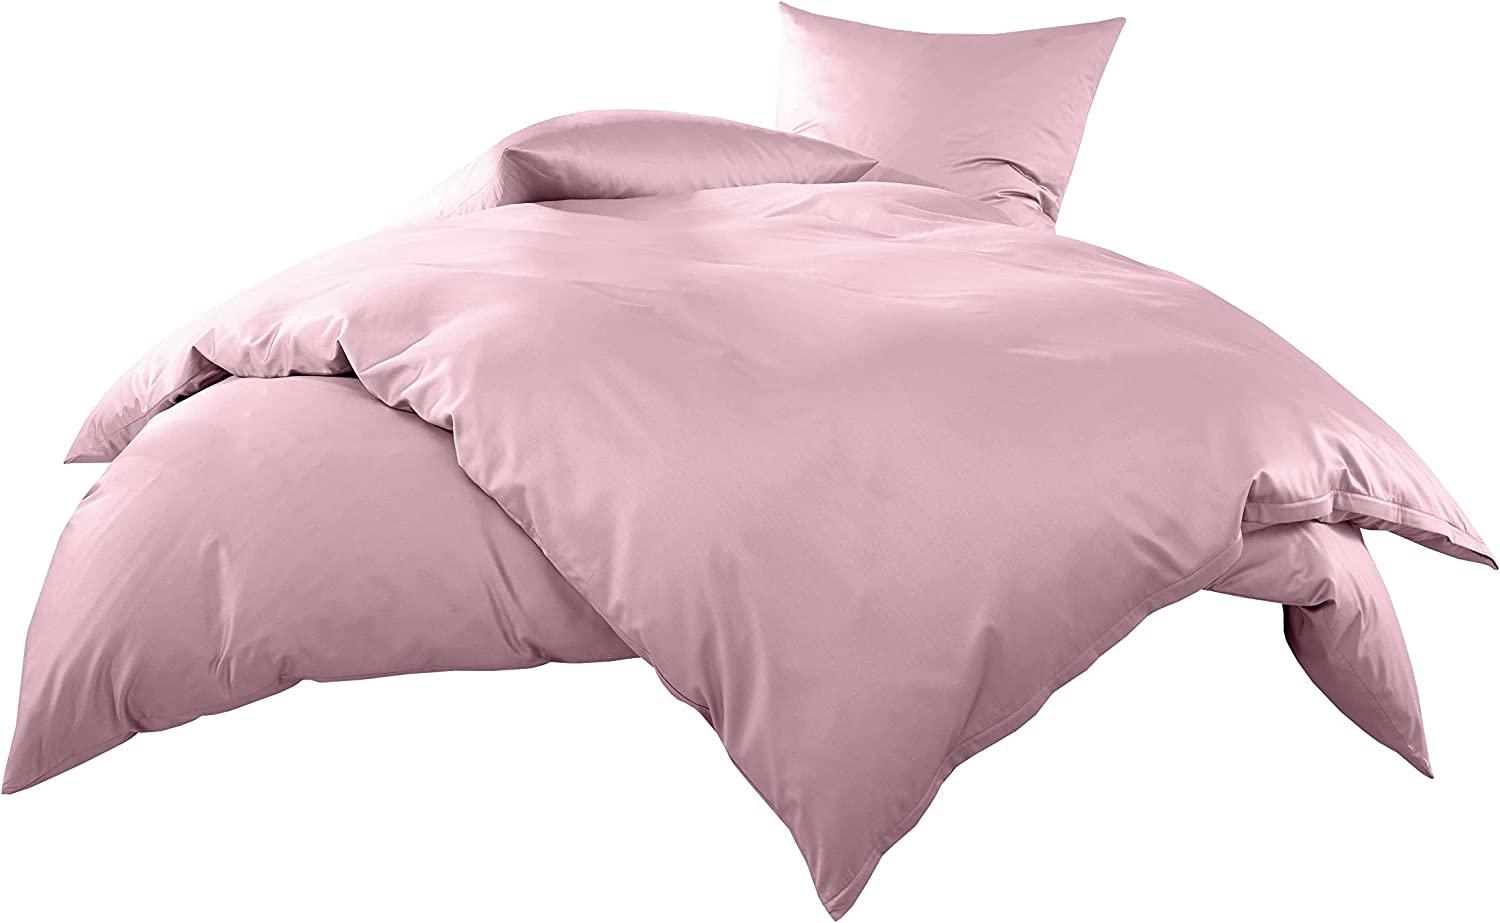 Bettwaesche-mit-Stil Mako Perkal Bettwäsche uni / einfarbig rosa Garnitur 135x200 + 80x80 cm Bild 1